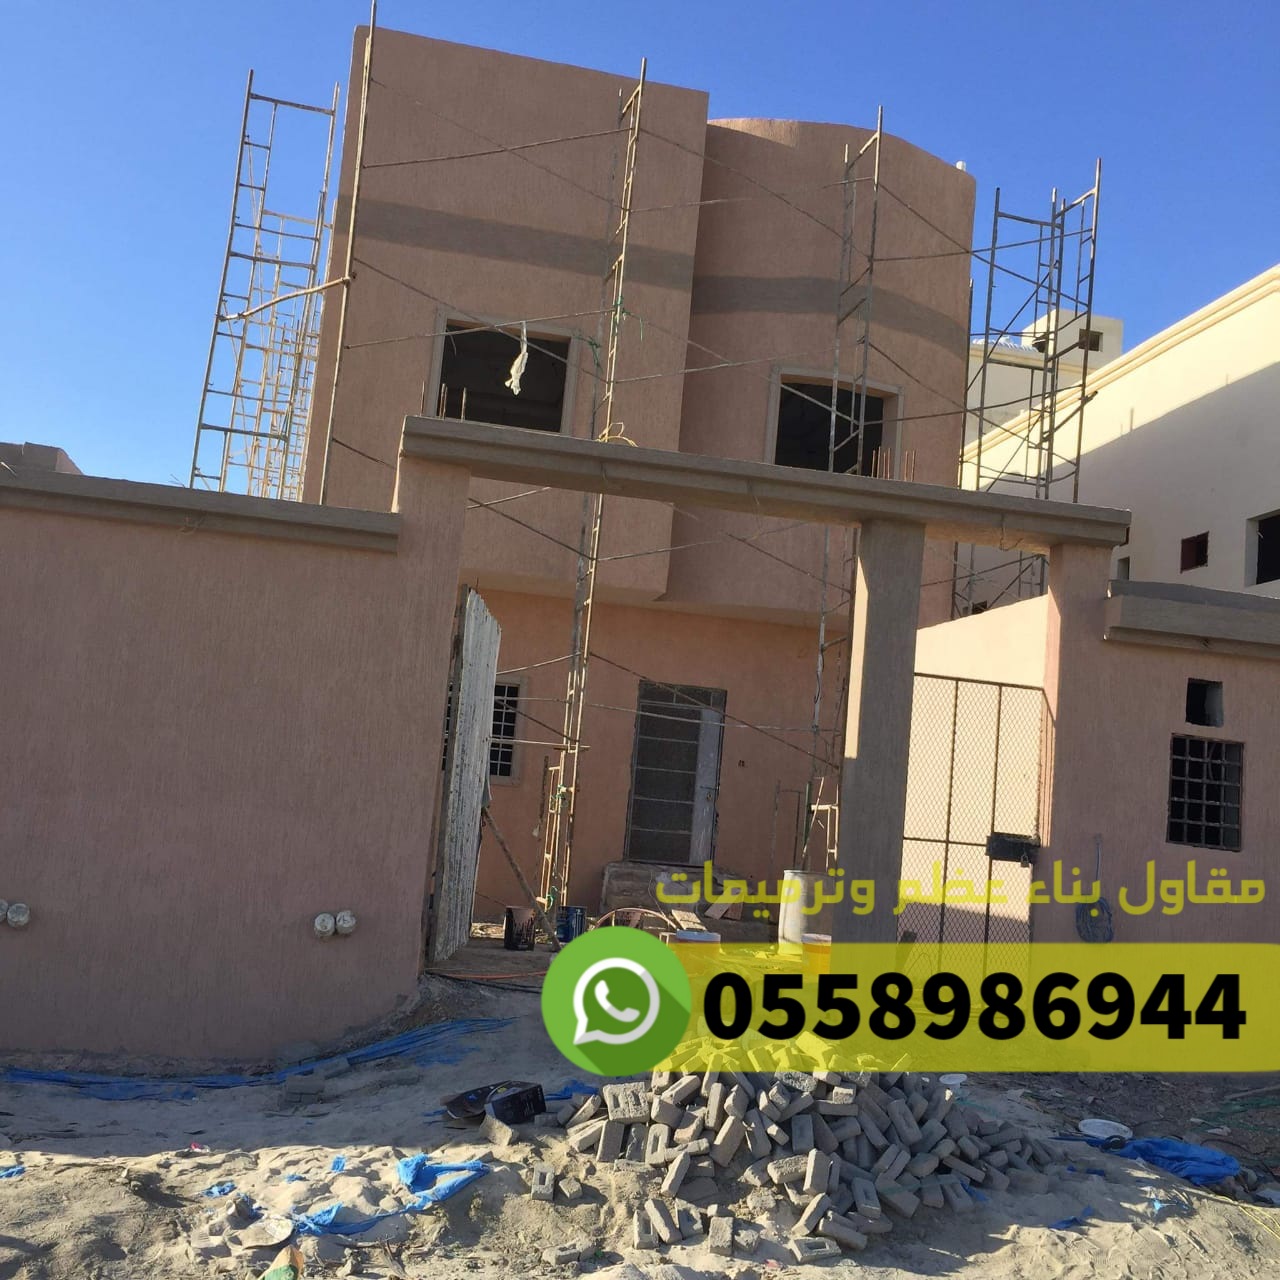 مقاول ترميم مباني في جدة, 0558986944  P_25183ulkh1